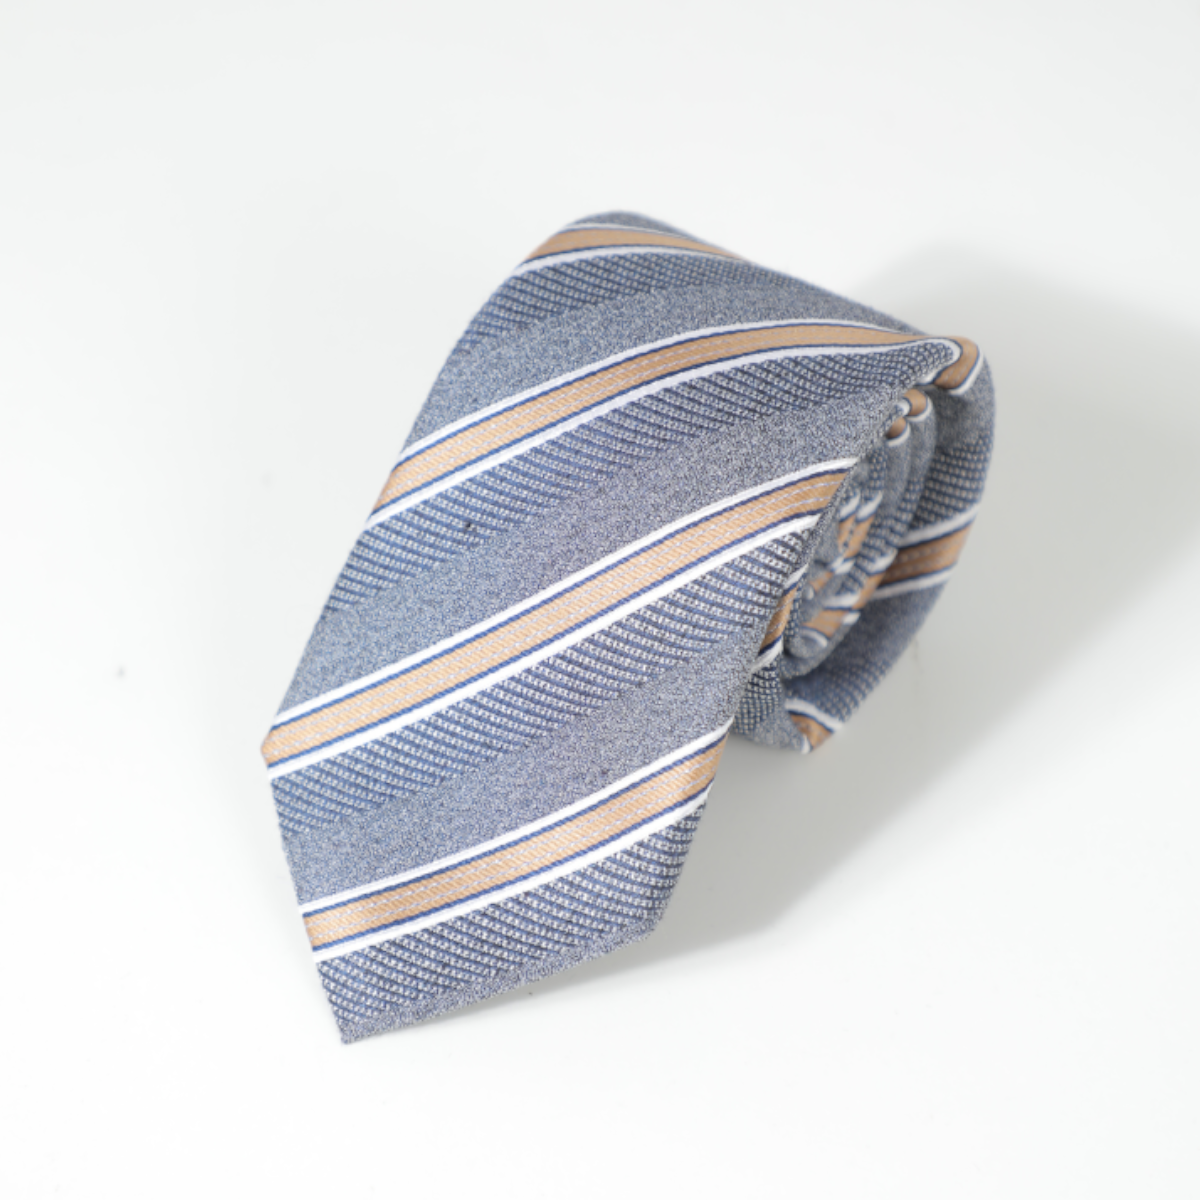 D's Damat Blue Tie With Beige Stripes